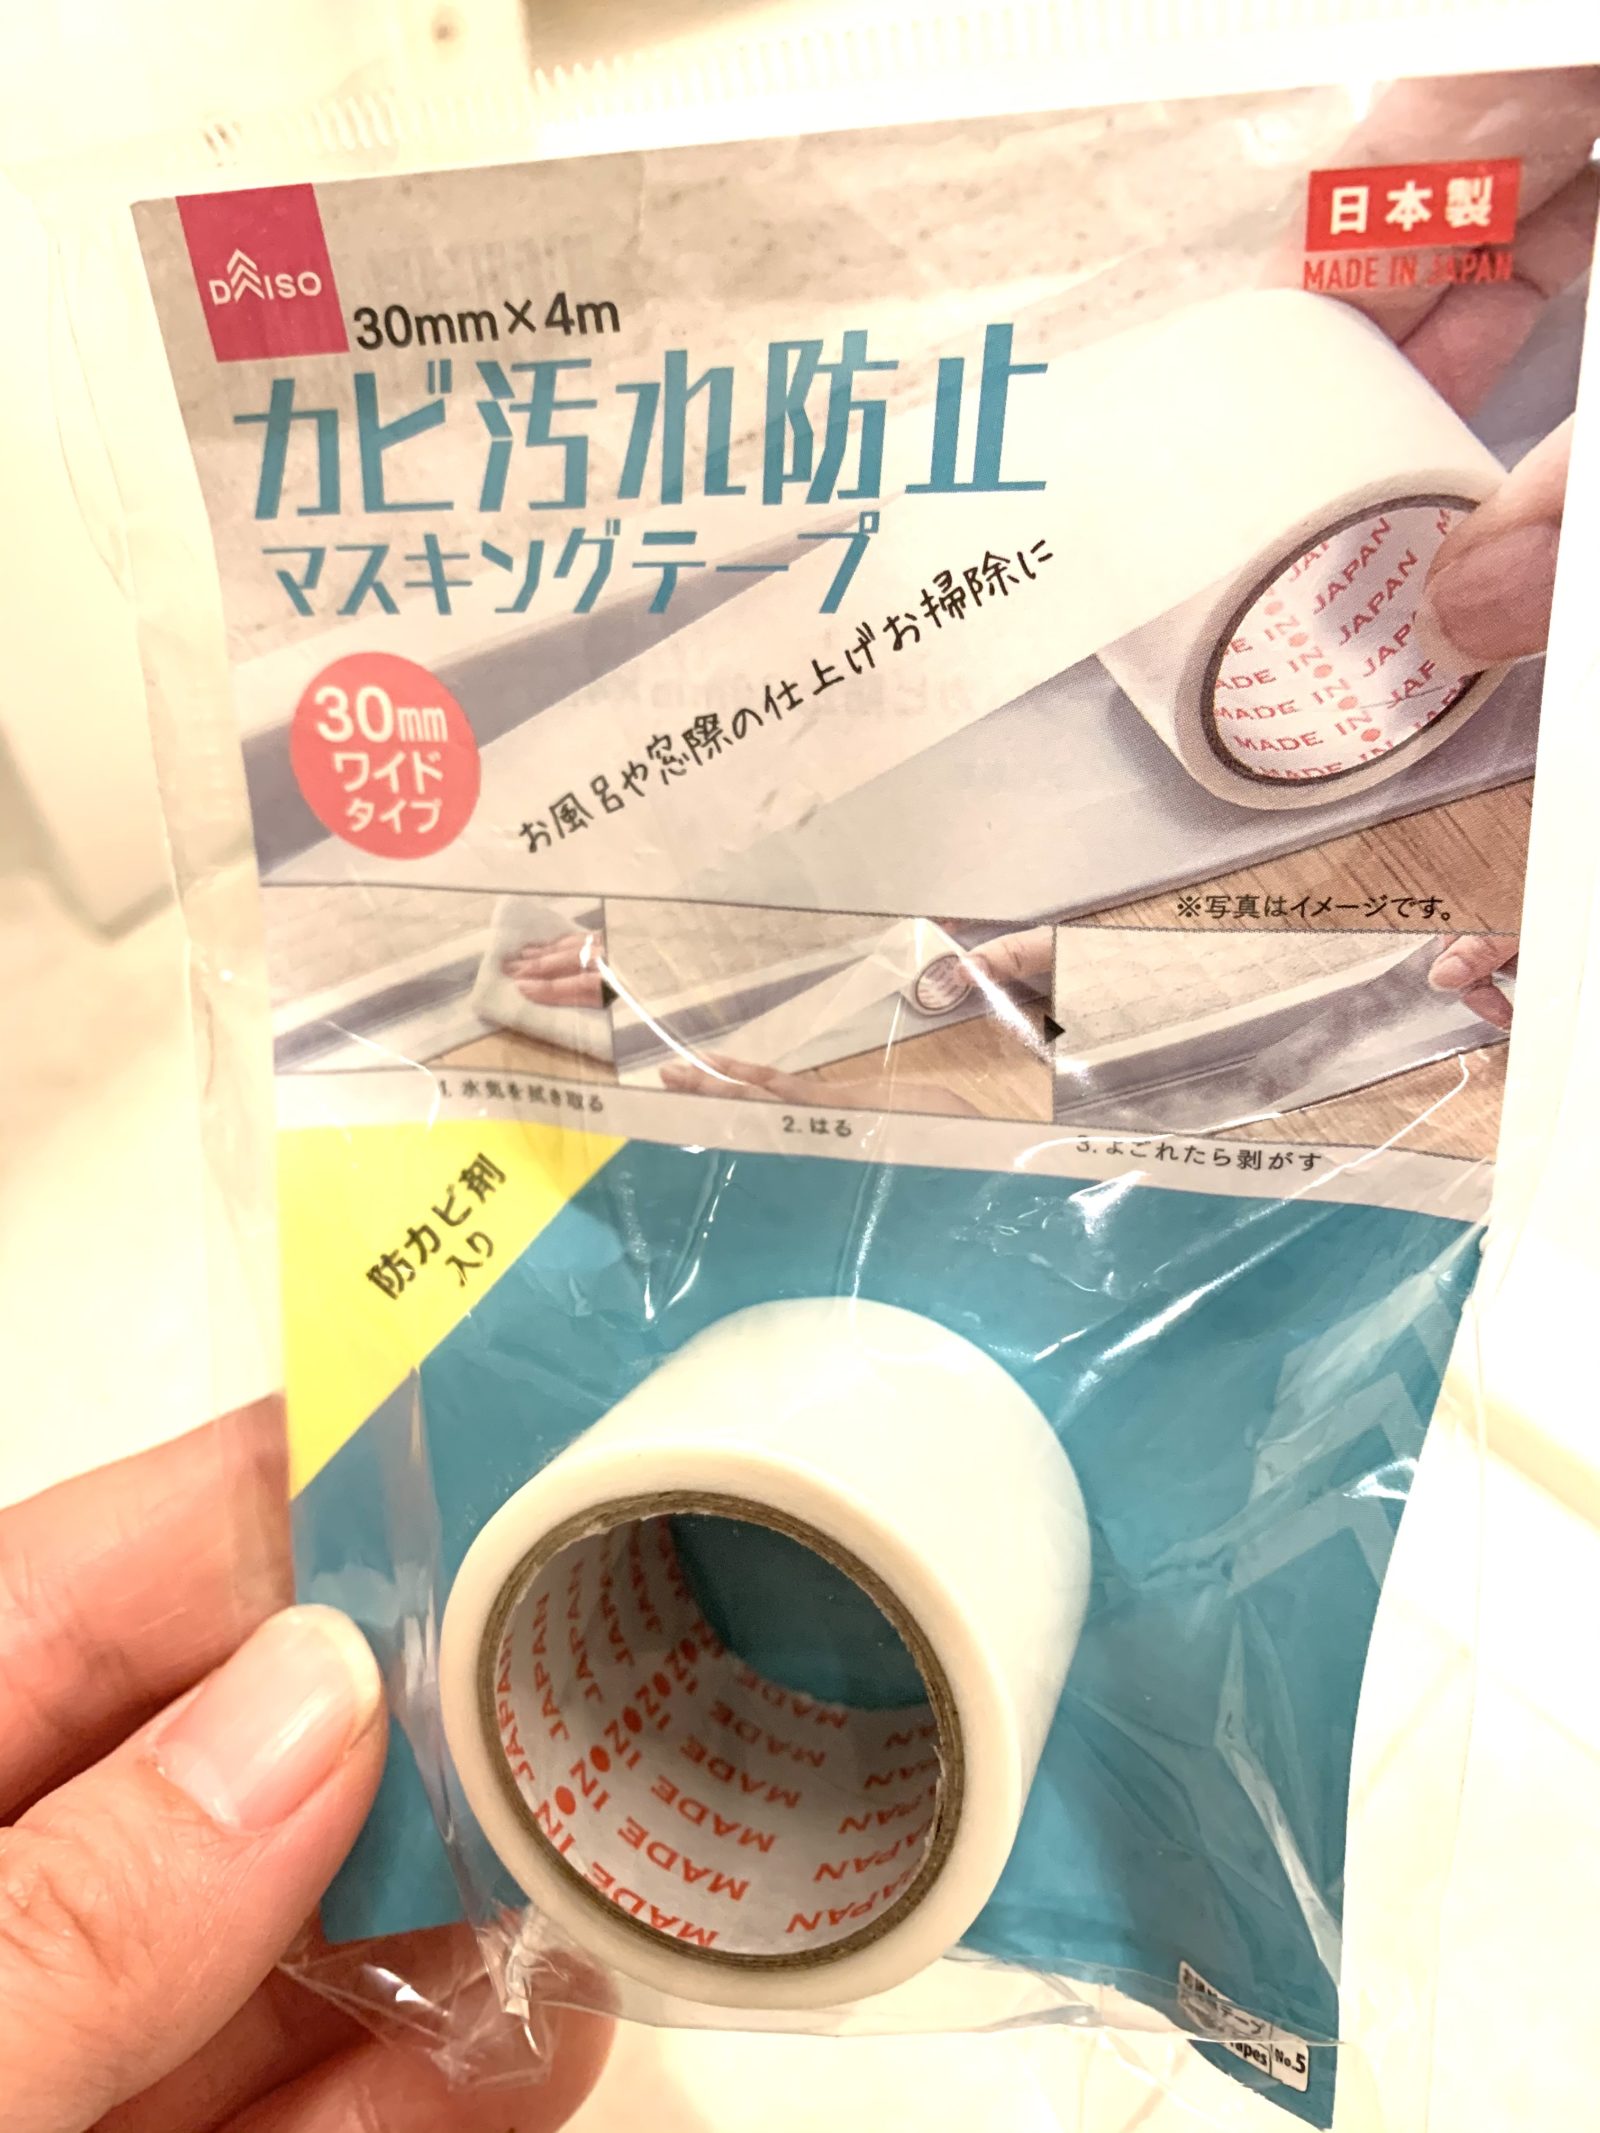 ダイソーの大人気商品「カビ汚れ防止マスキングテープ」を正直レポ